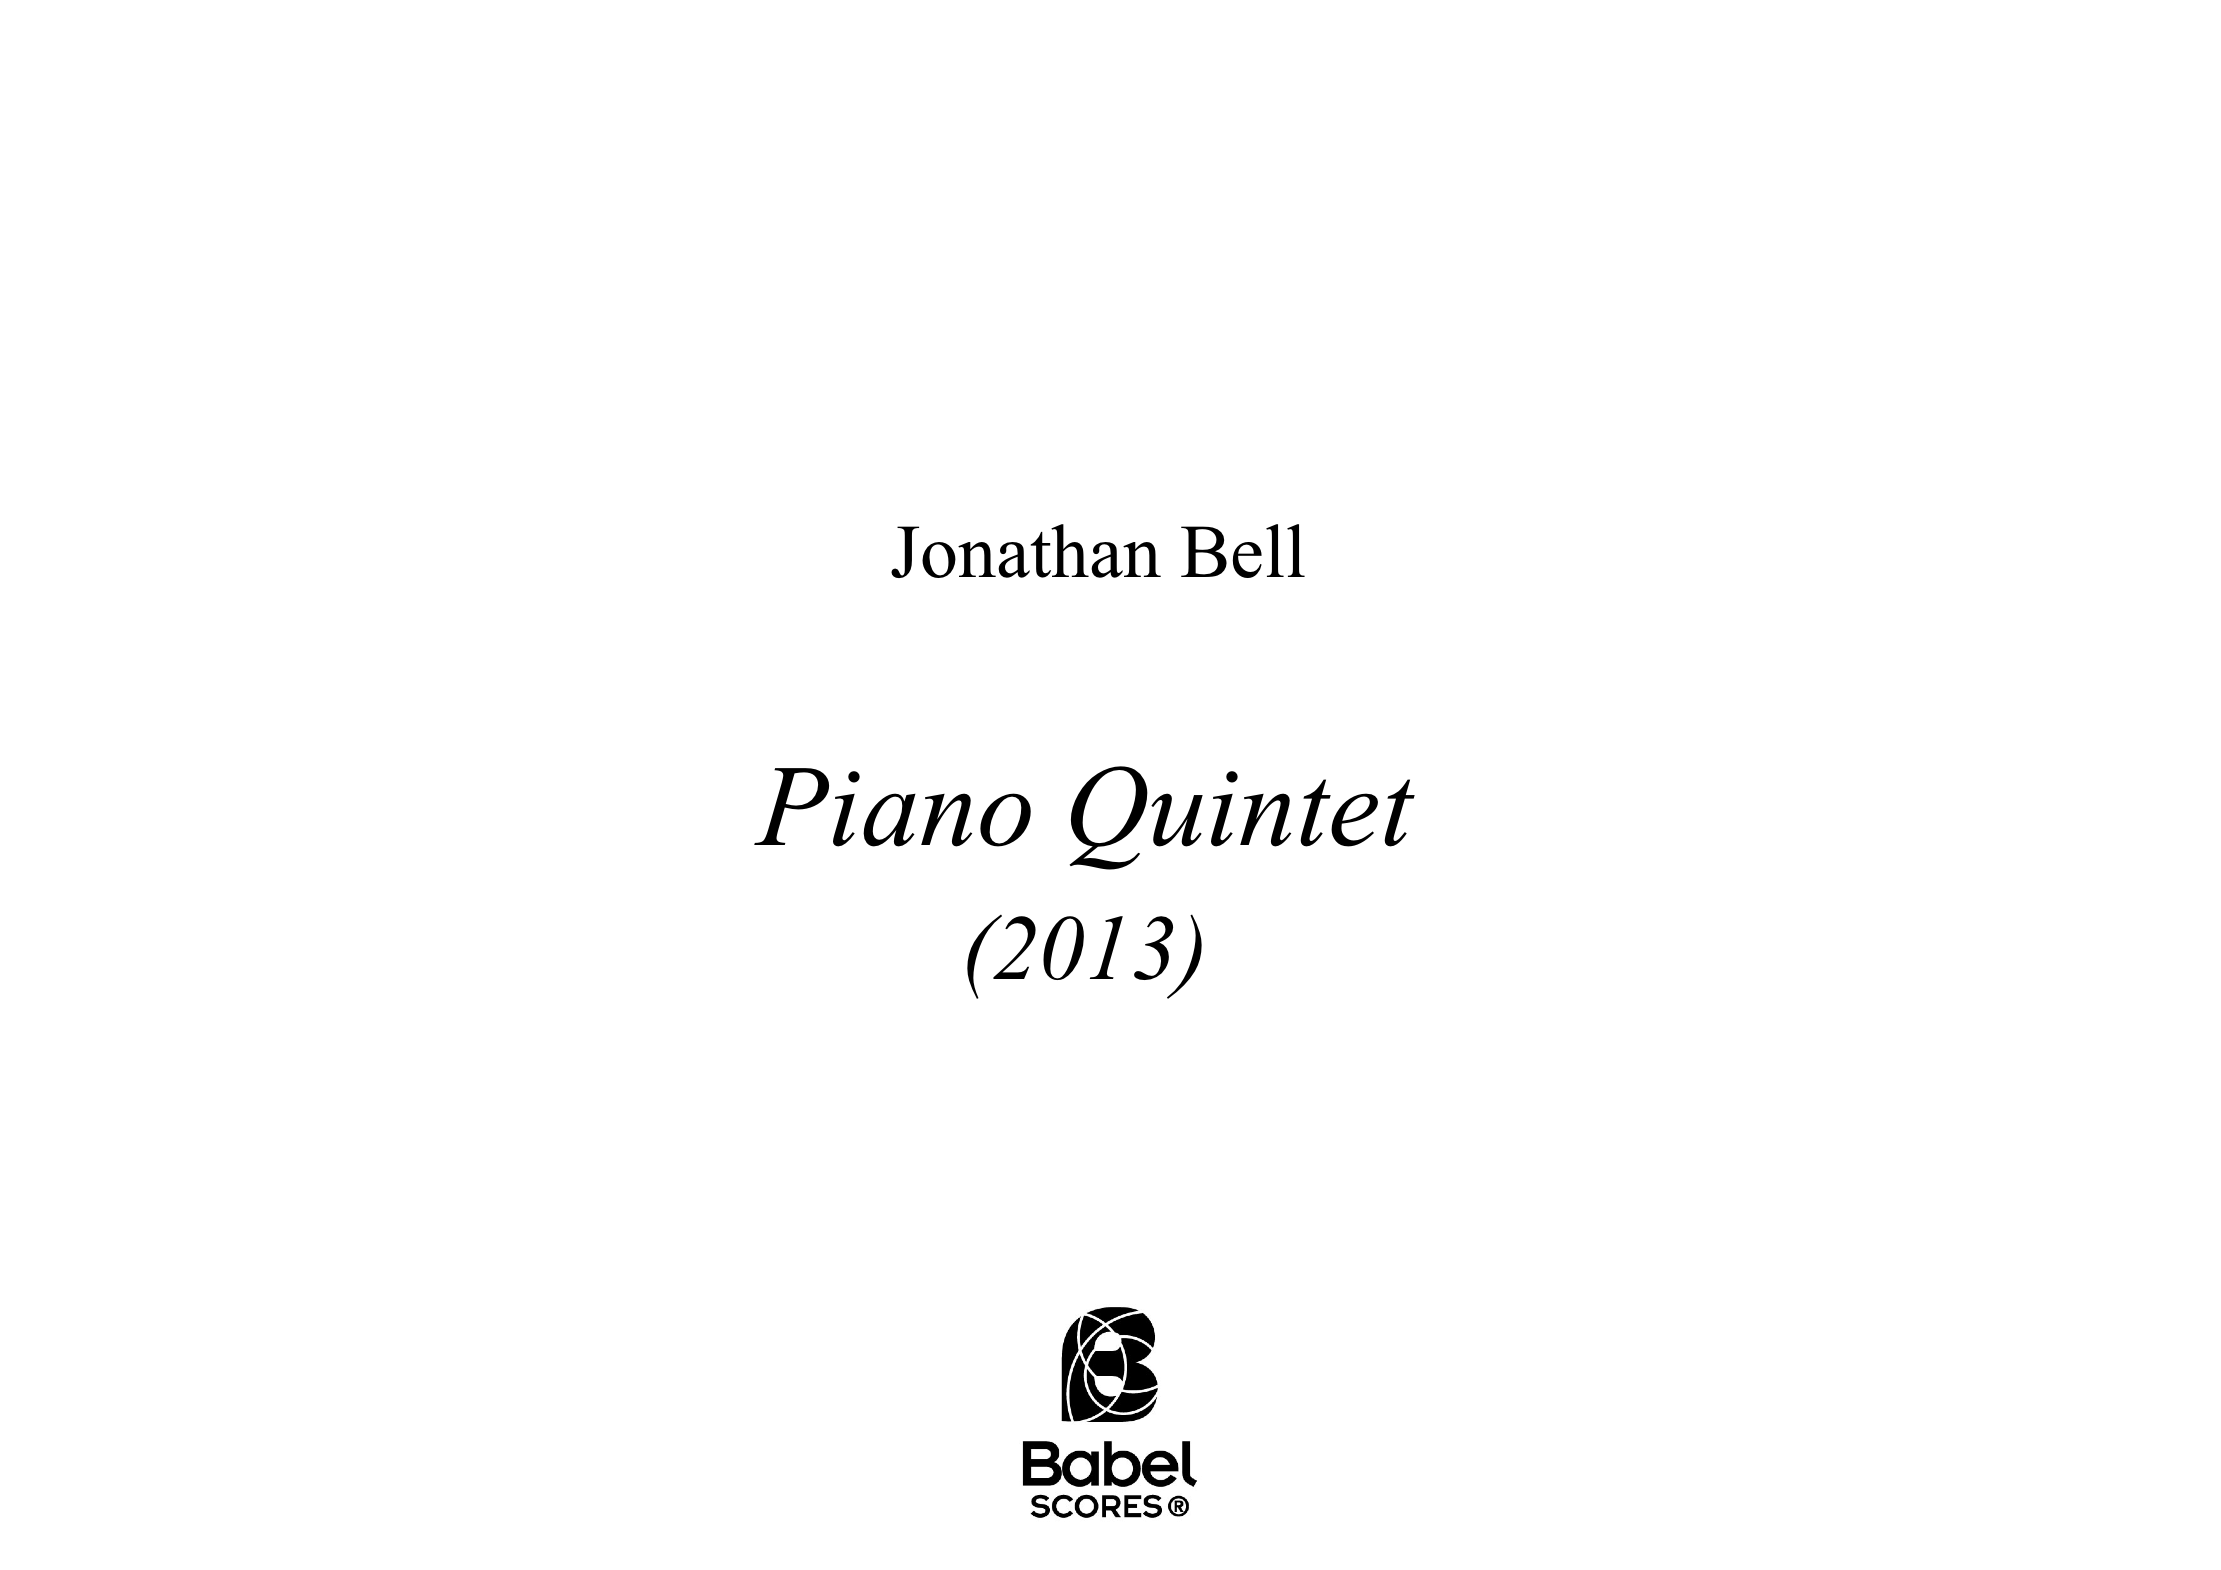 Piano quintet A4 z